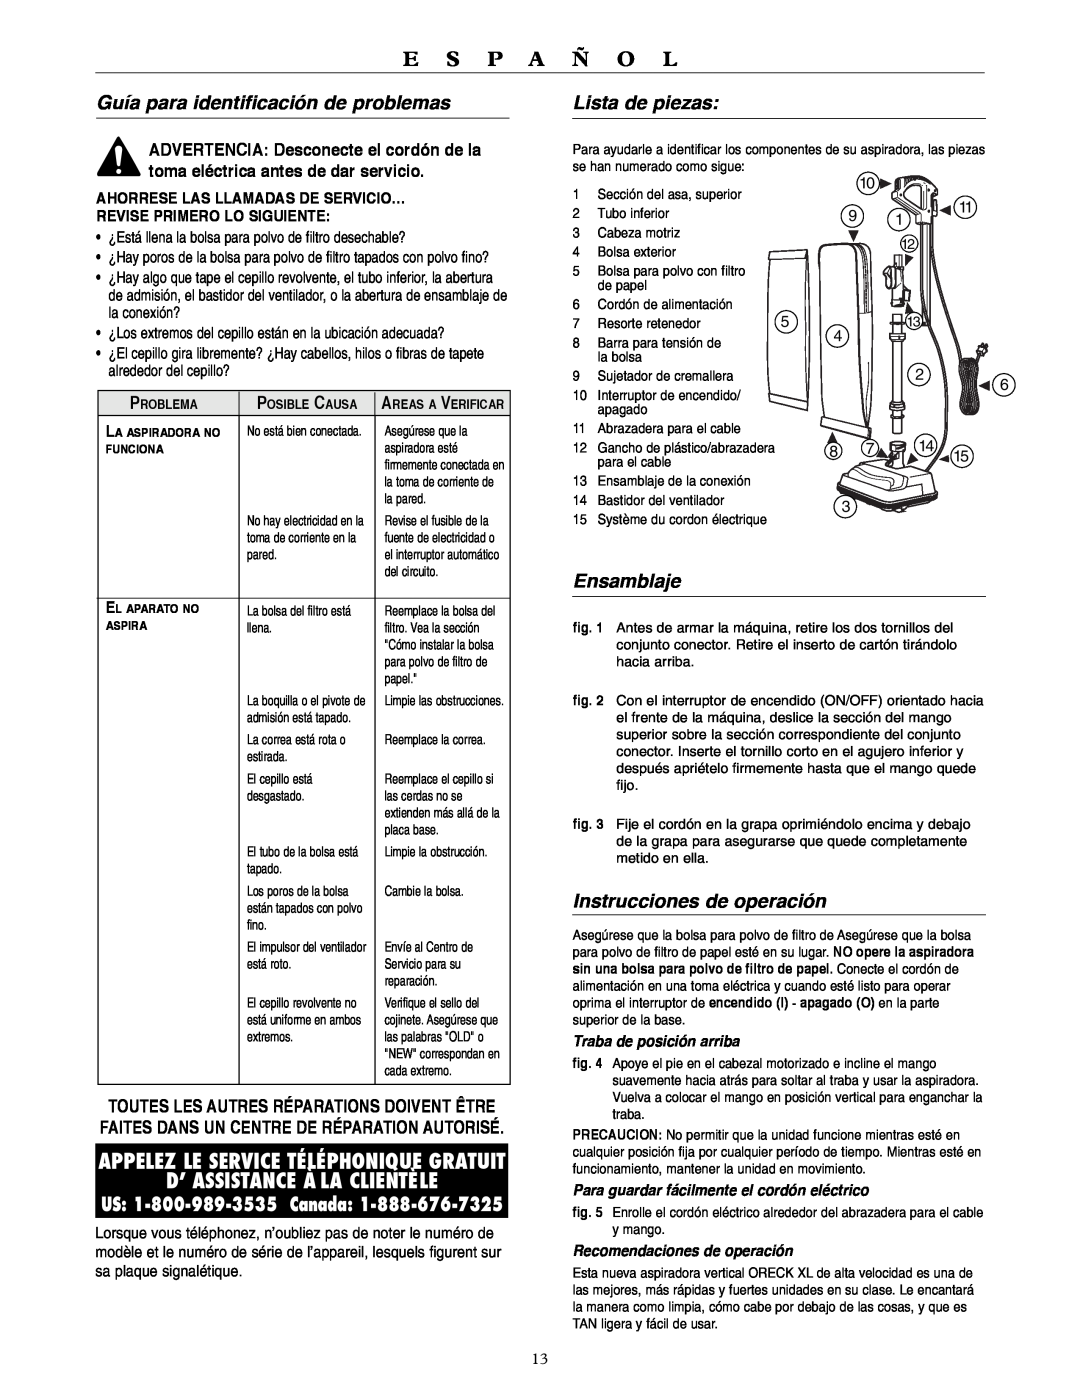 Oreck U3120HH warranty D’ Assistance À La Clientèle, Guía para identificación de problemas, Lista de piezas, Ensamblaje 